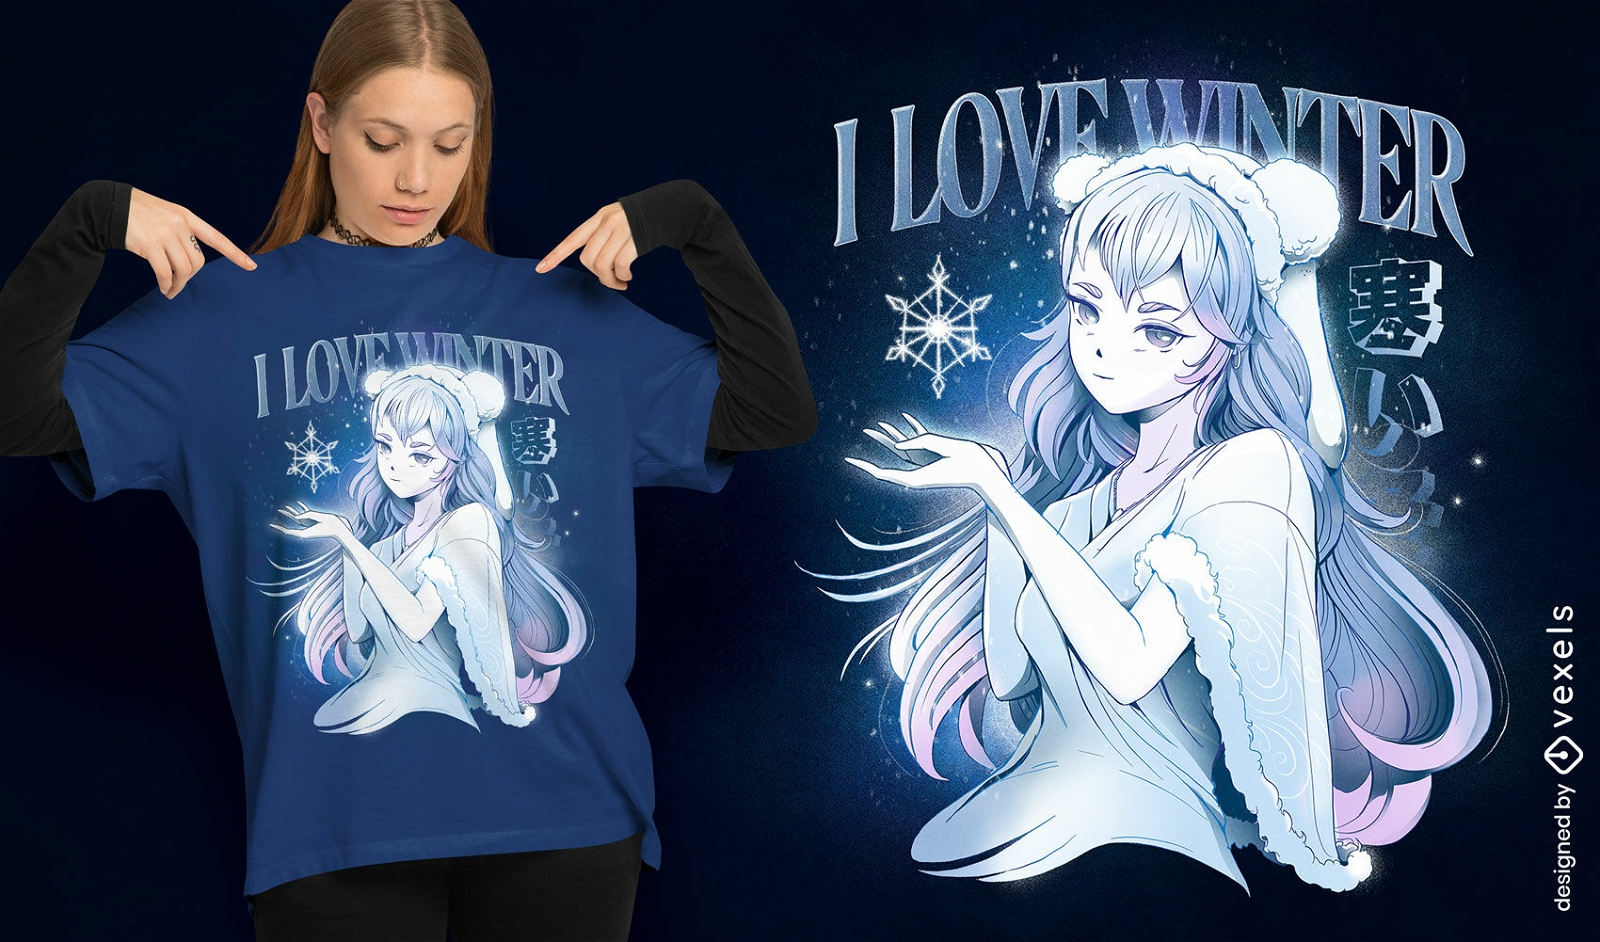 Dise?o de camiseta de chica anime de invierno.